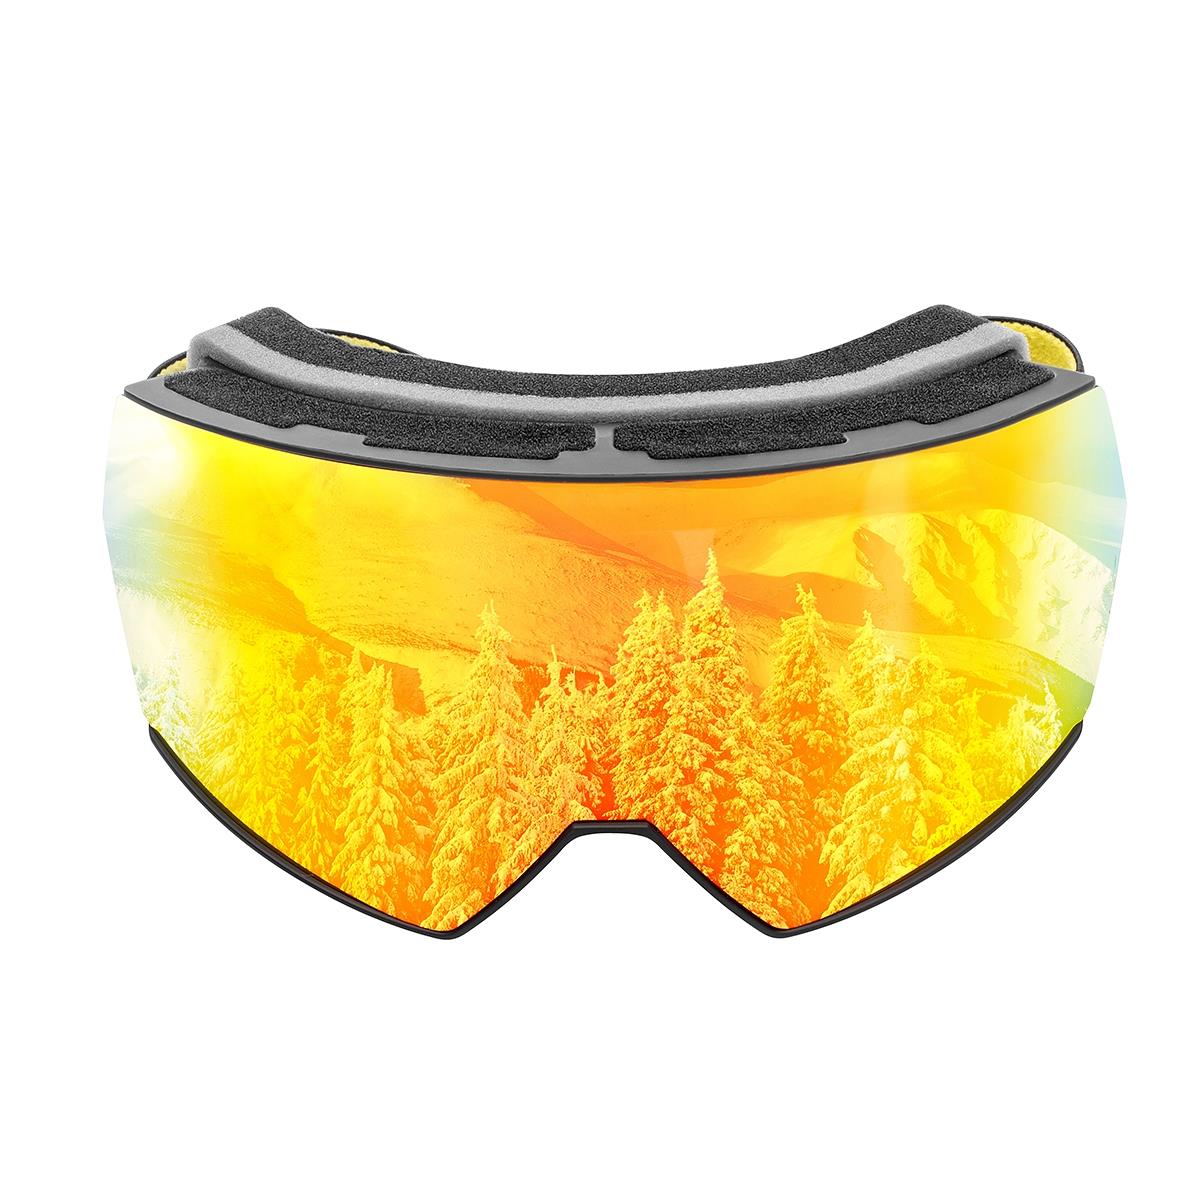 Очки горнолыжные HS-HX-010 Helios очки для плавания взрослые uv защита